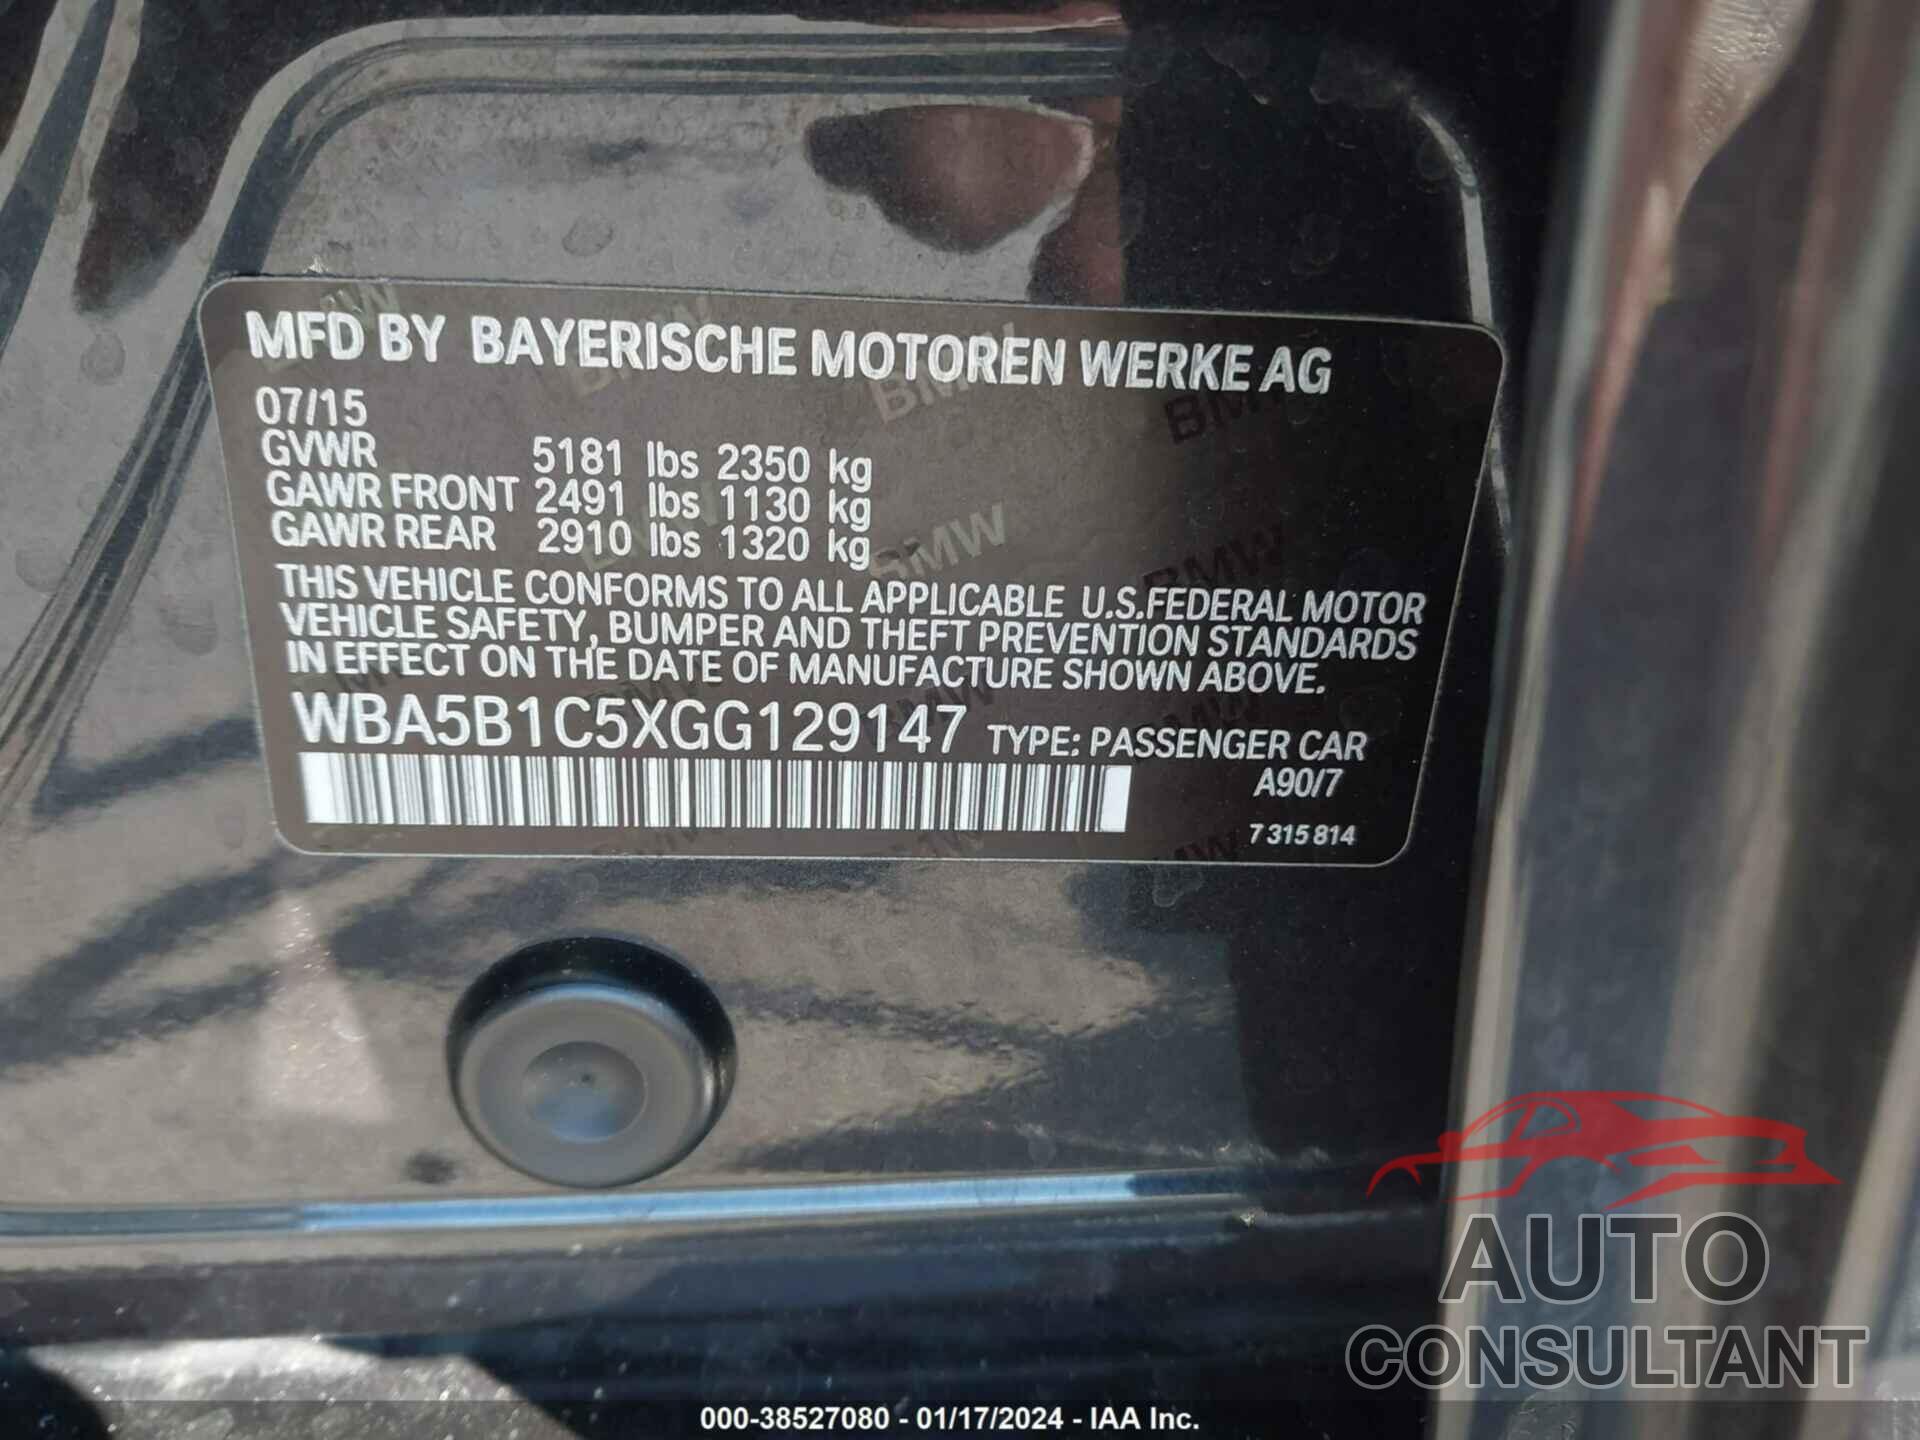 BMW 535I 2016 - WBA5B1C5XGG129147